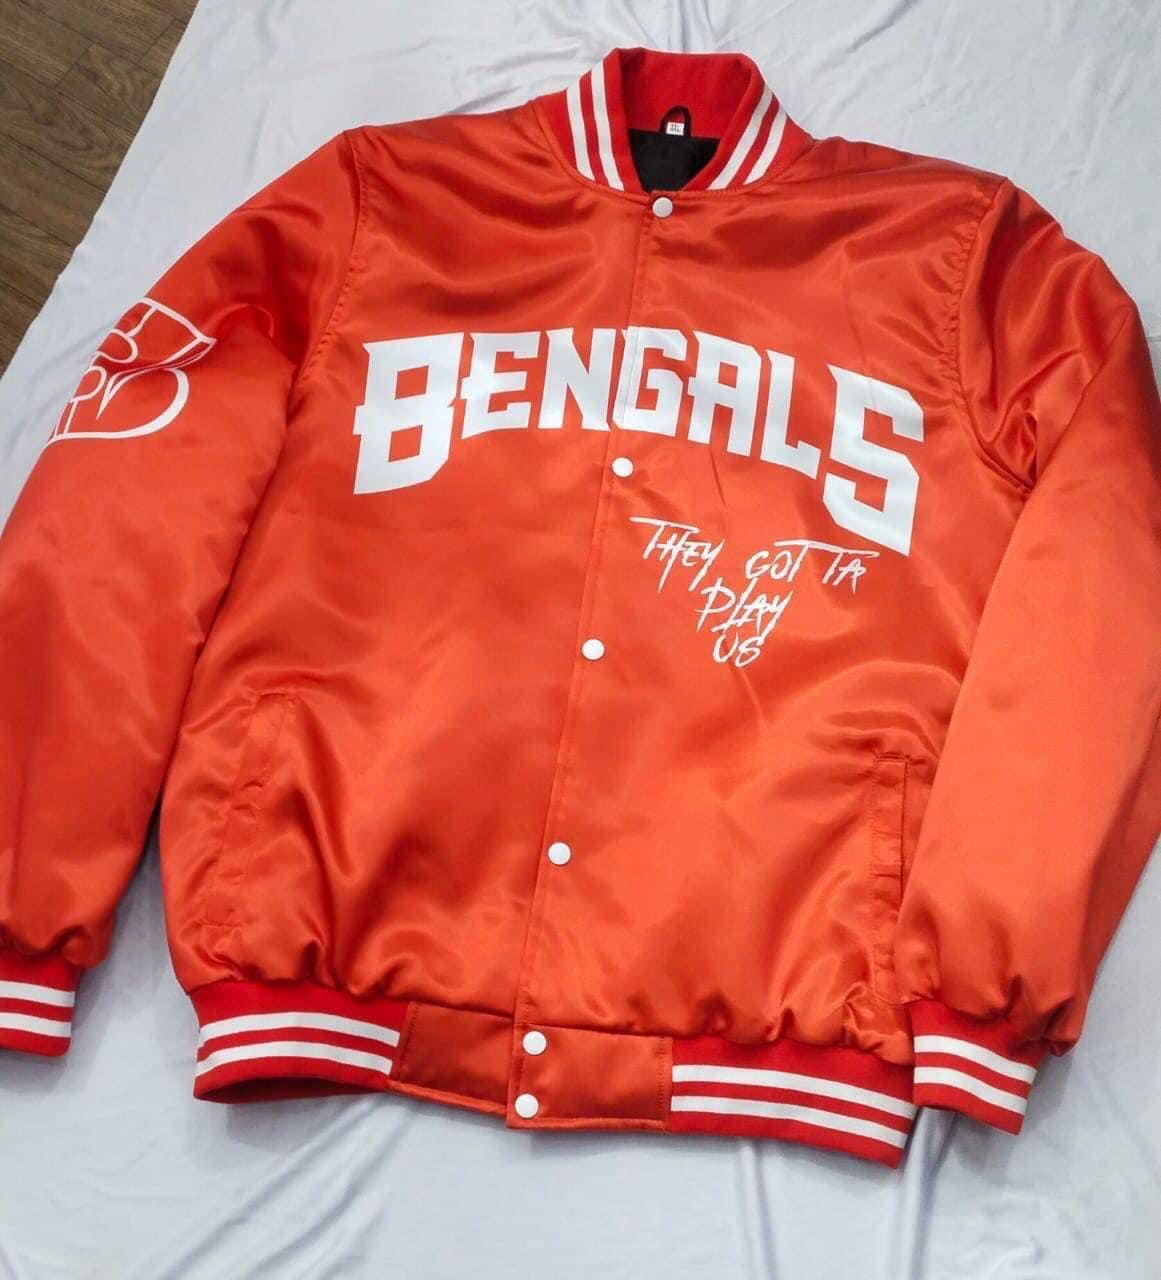 Bengals jackets